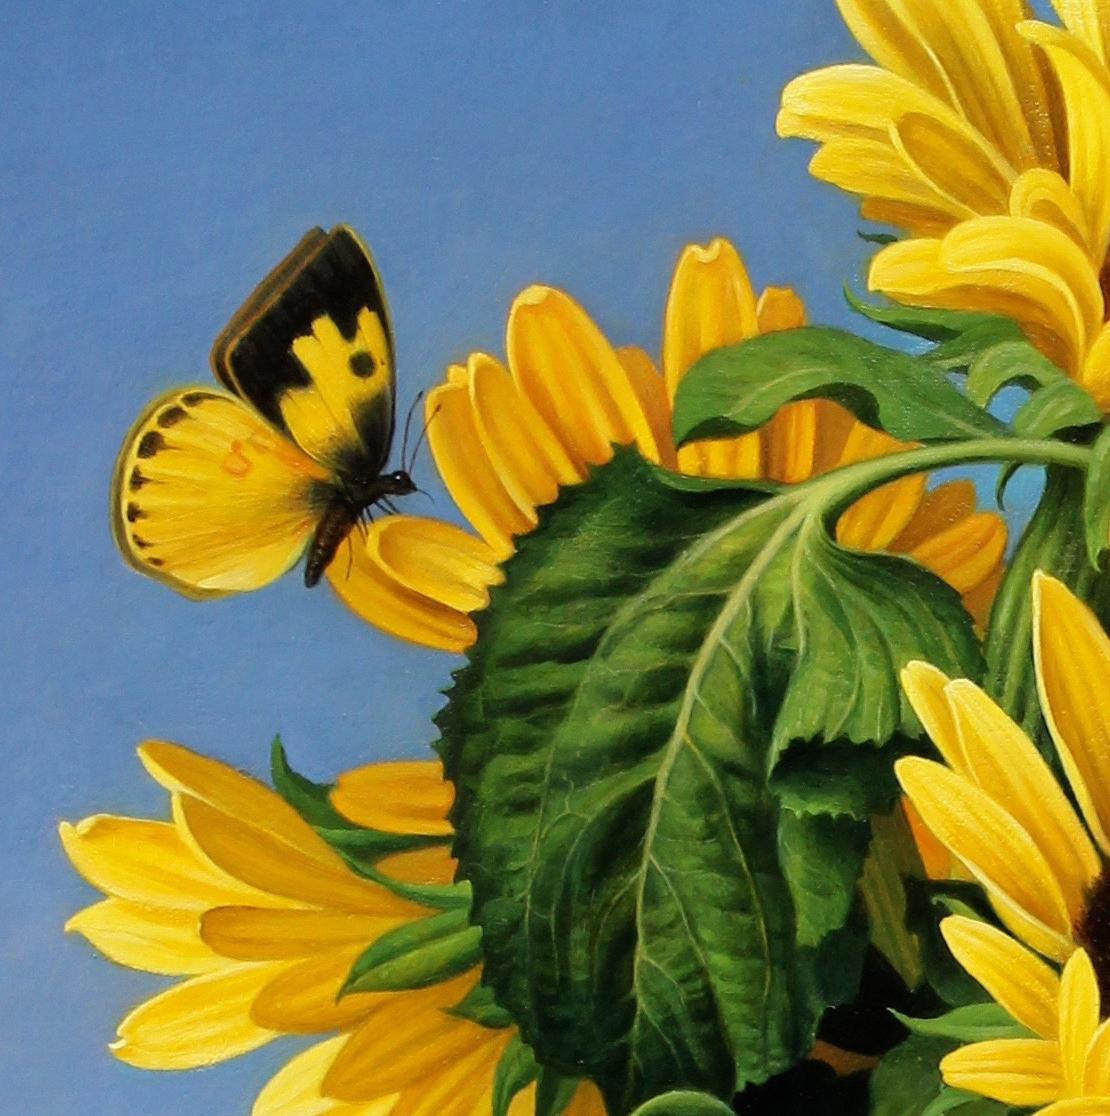 GIRASOL représente un bouquet de tournesols mexicains, regroupés au sommet d'une colonne. Un papillon monarque cherche du nectar, tandis que derrière lui un vaste champ de tournesols fait face à la lumière. La peinture est aussi fantaisiste que